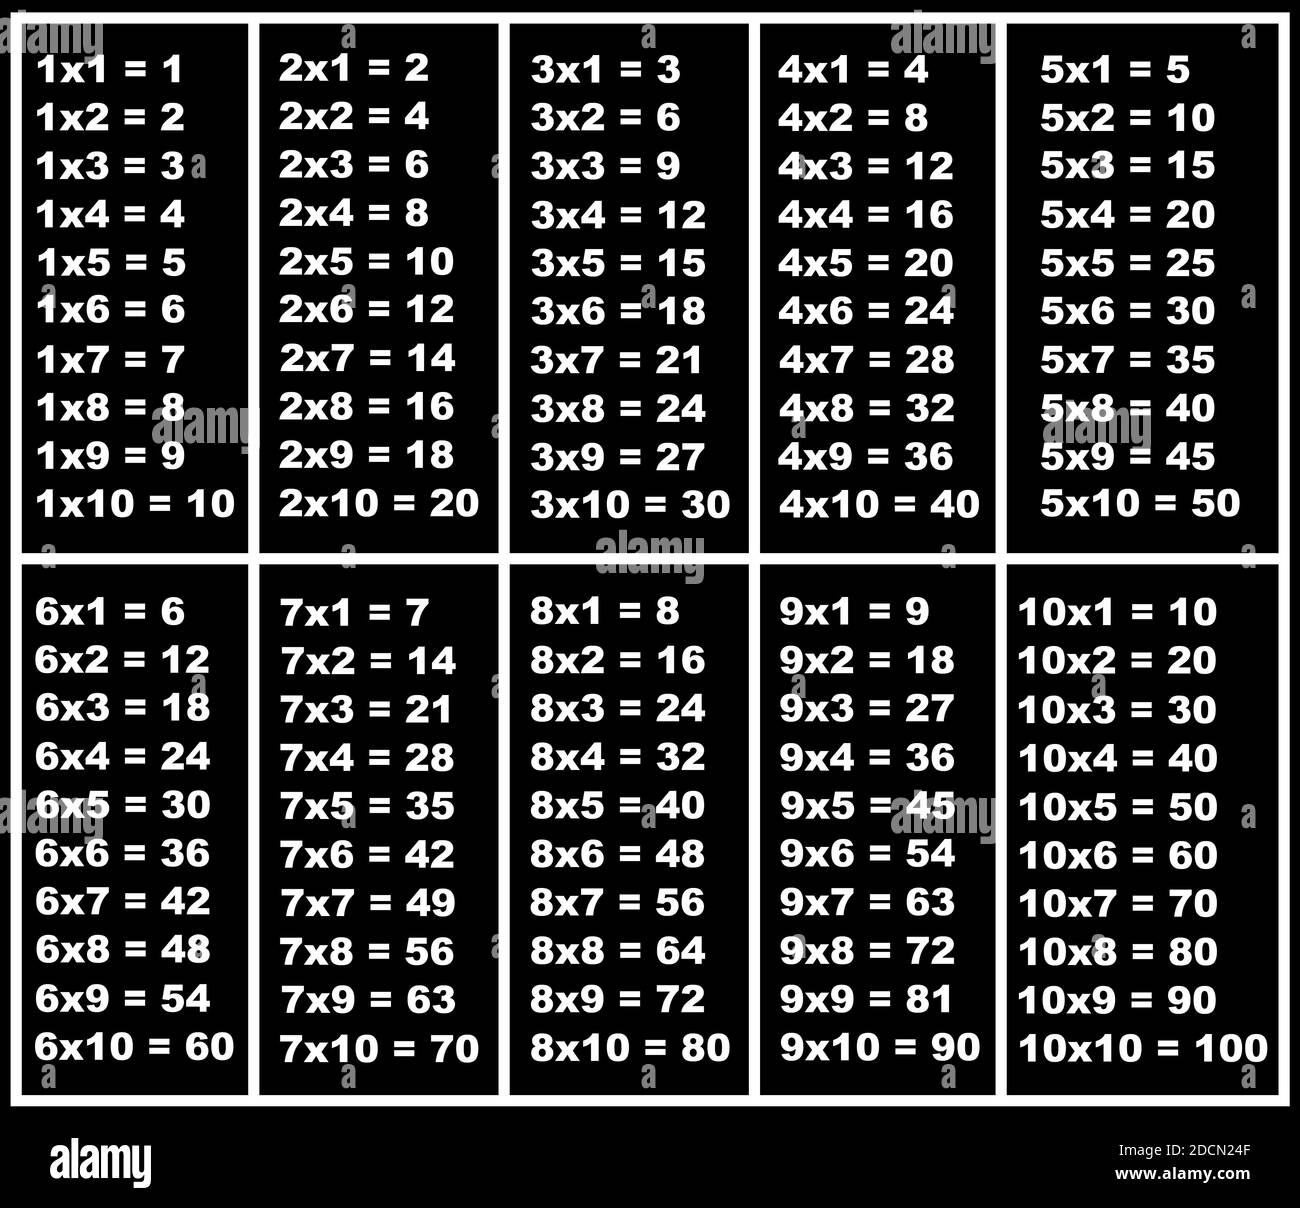 Table de multiplication Banque d'images noir et blanc - Alamy